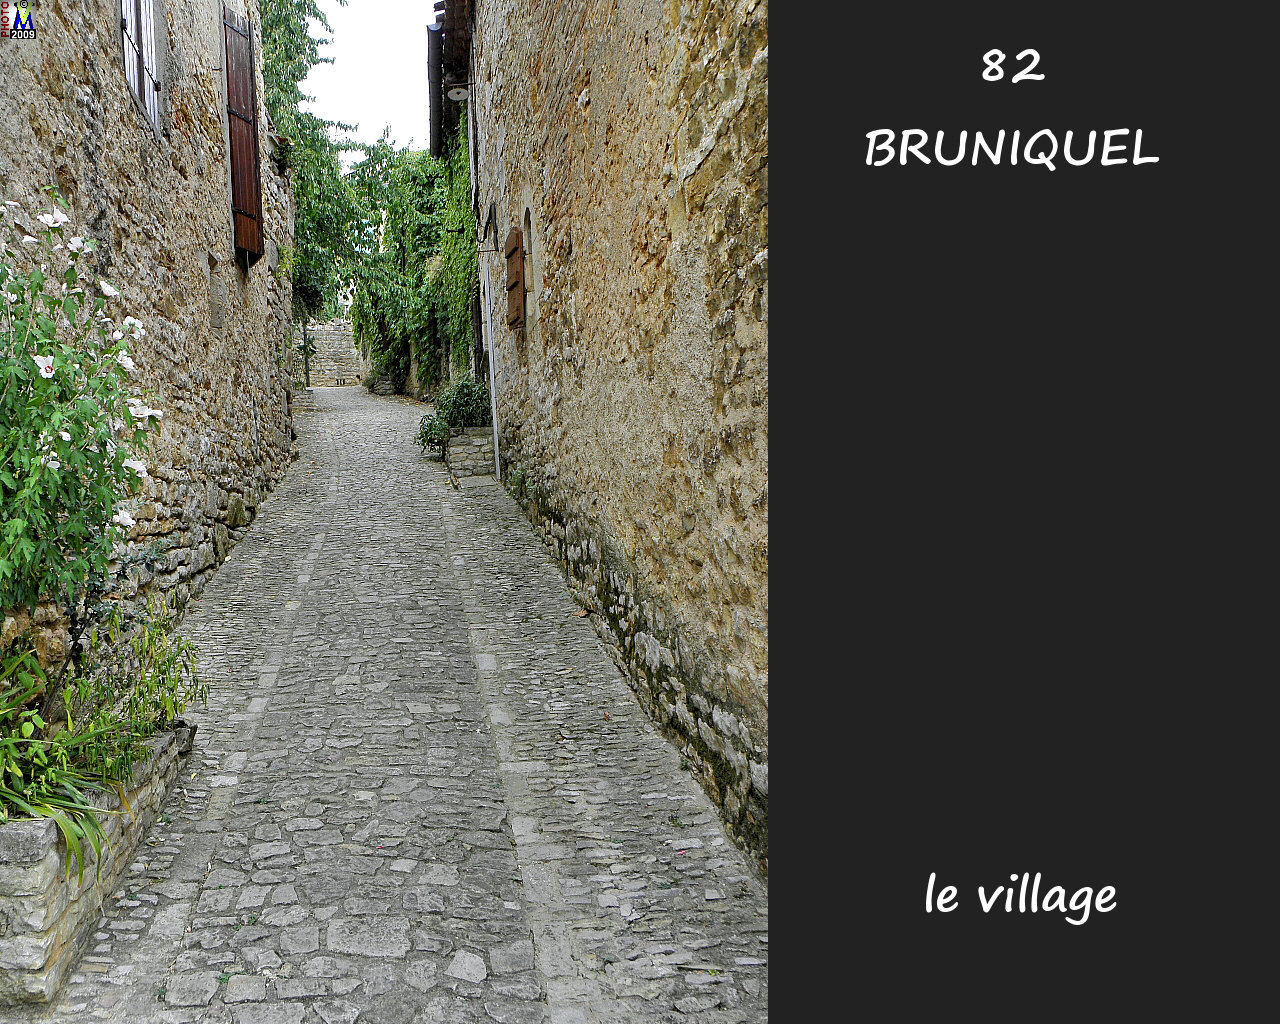 82BRUNIQUEL_village_126.jpg